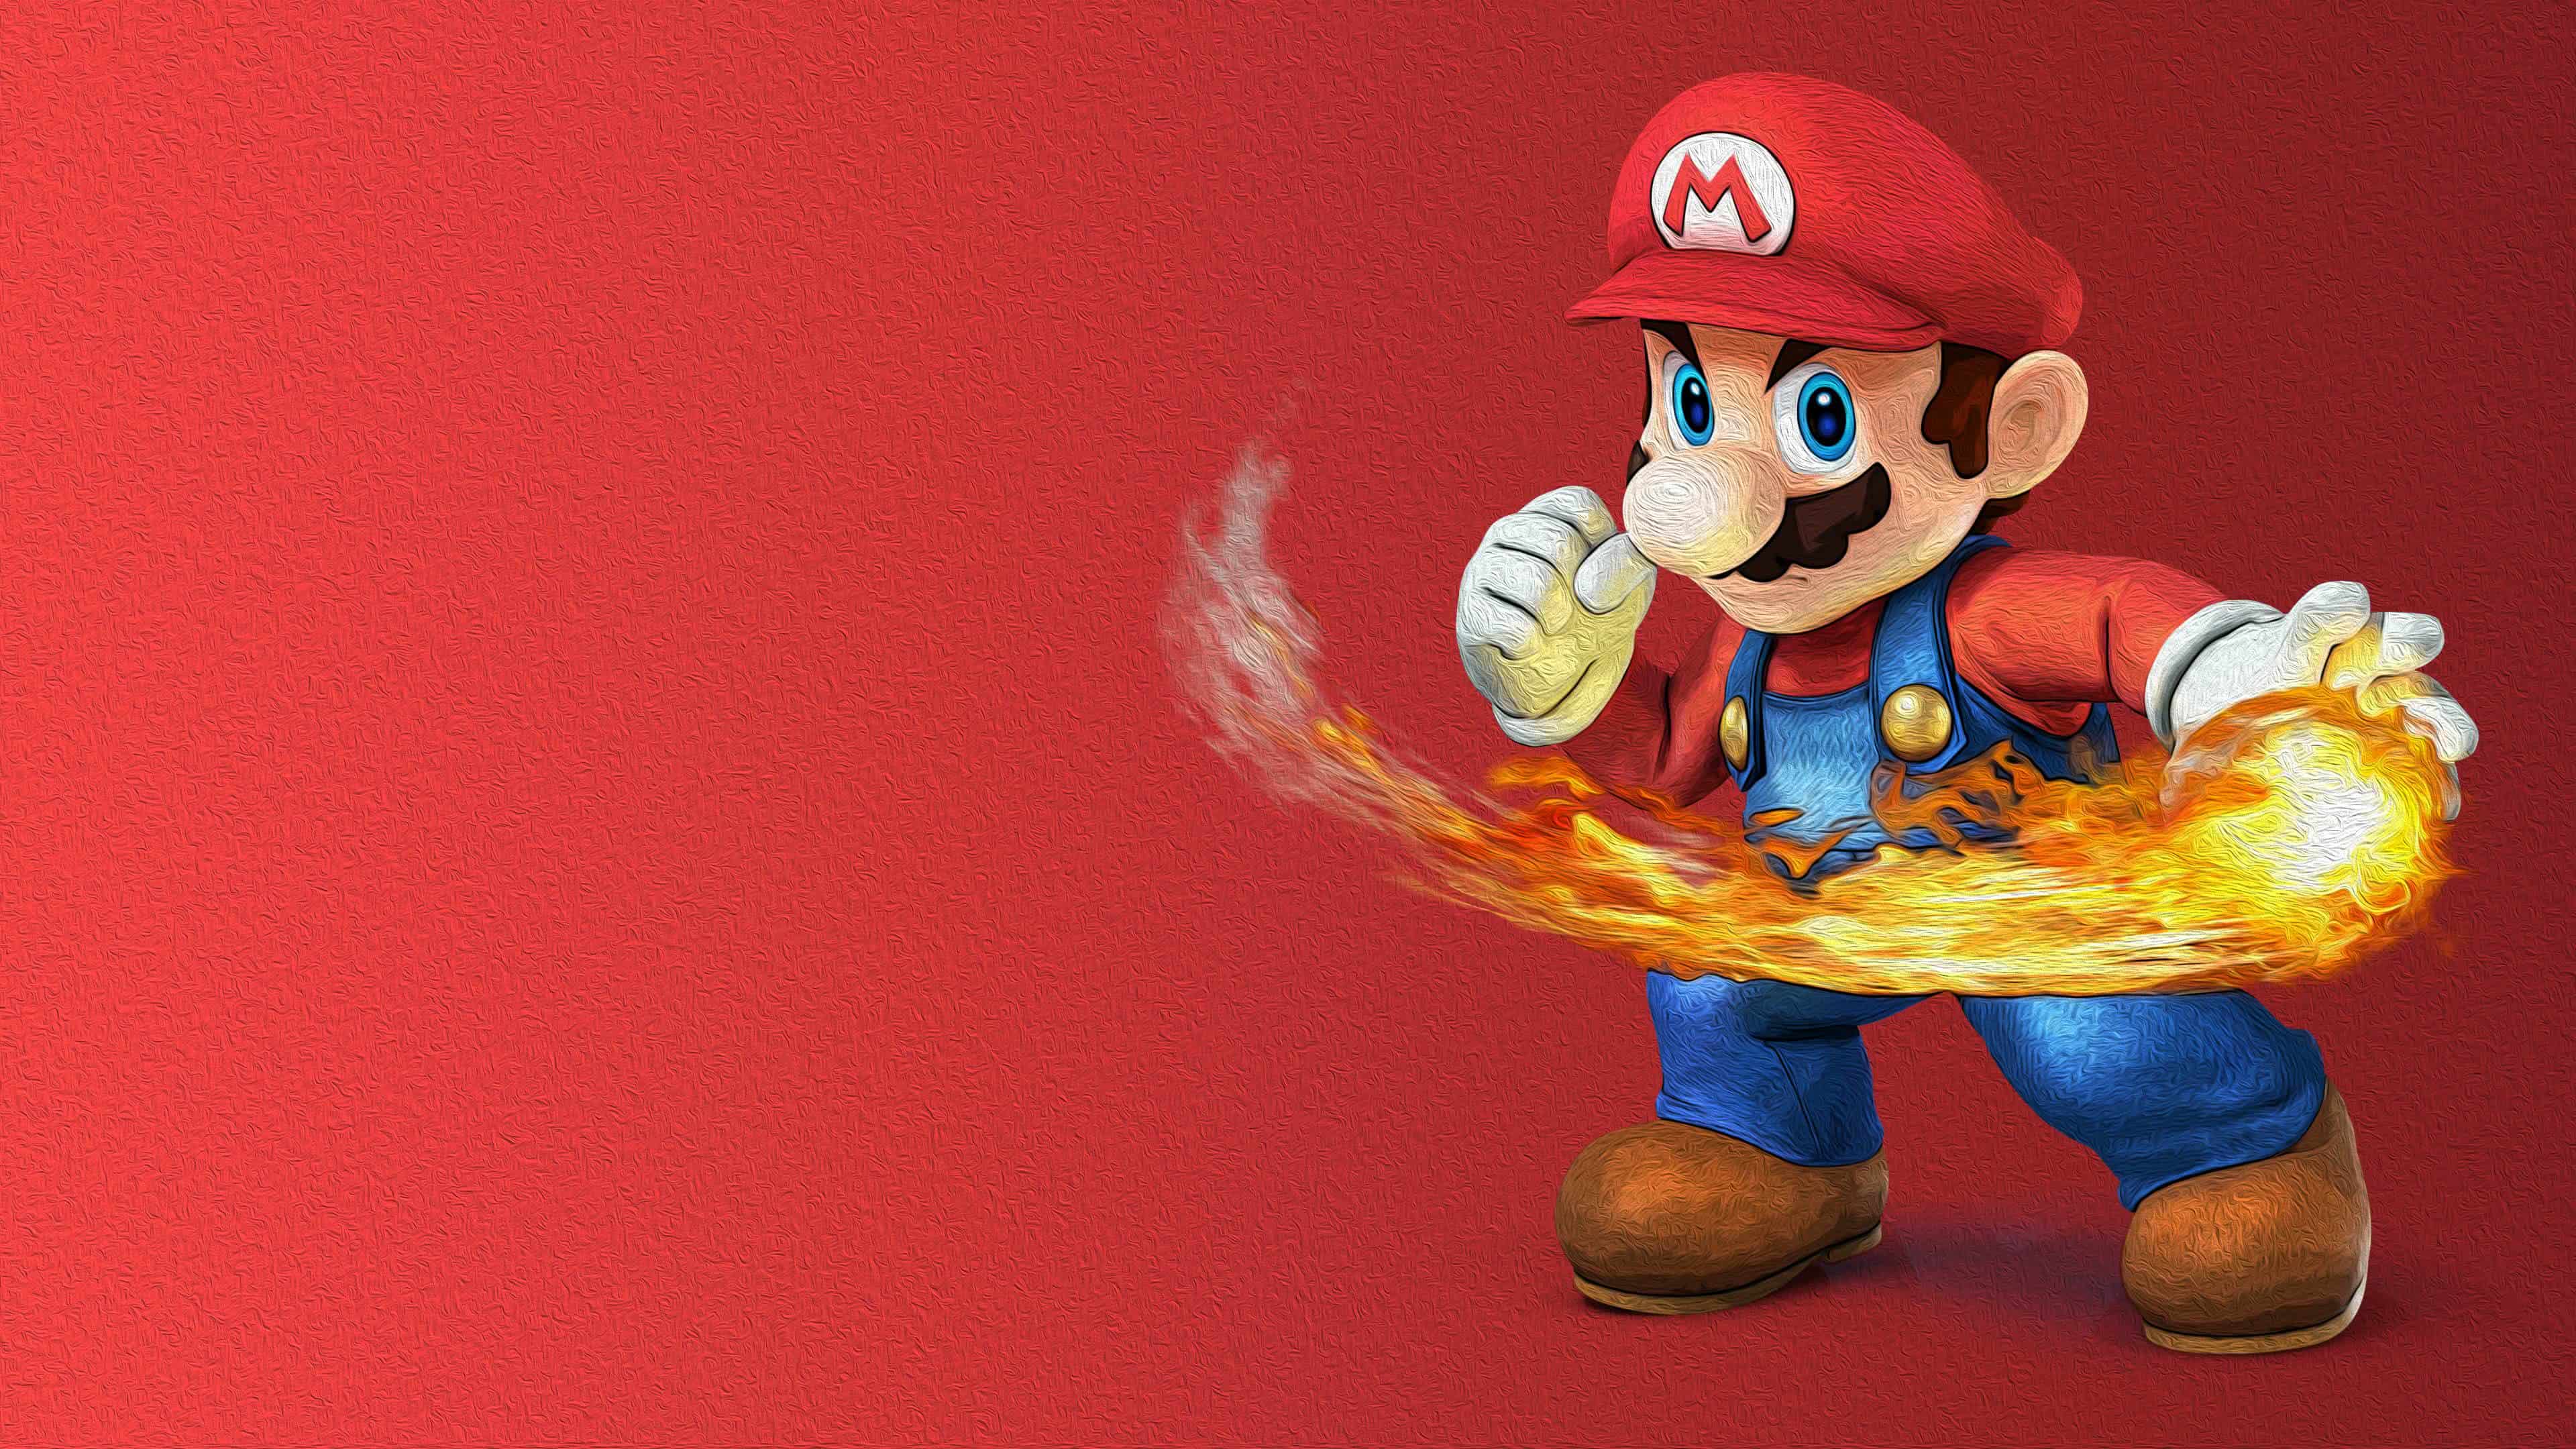 Super Smash Bros Mario Uhd 4k Wallpaper - Mario Bros Wallpaper 4k - HD Wallpaper 